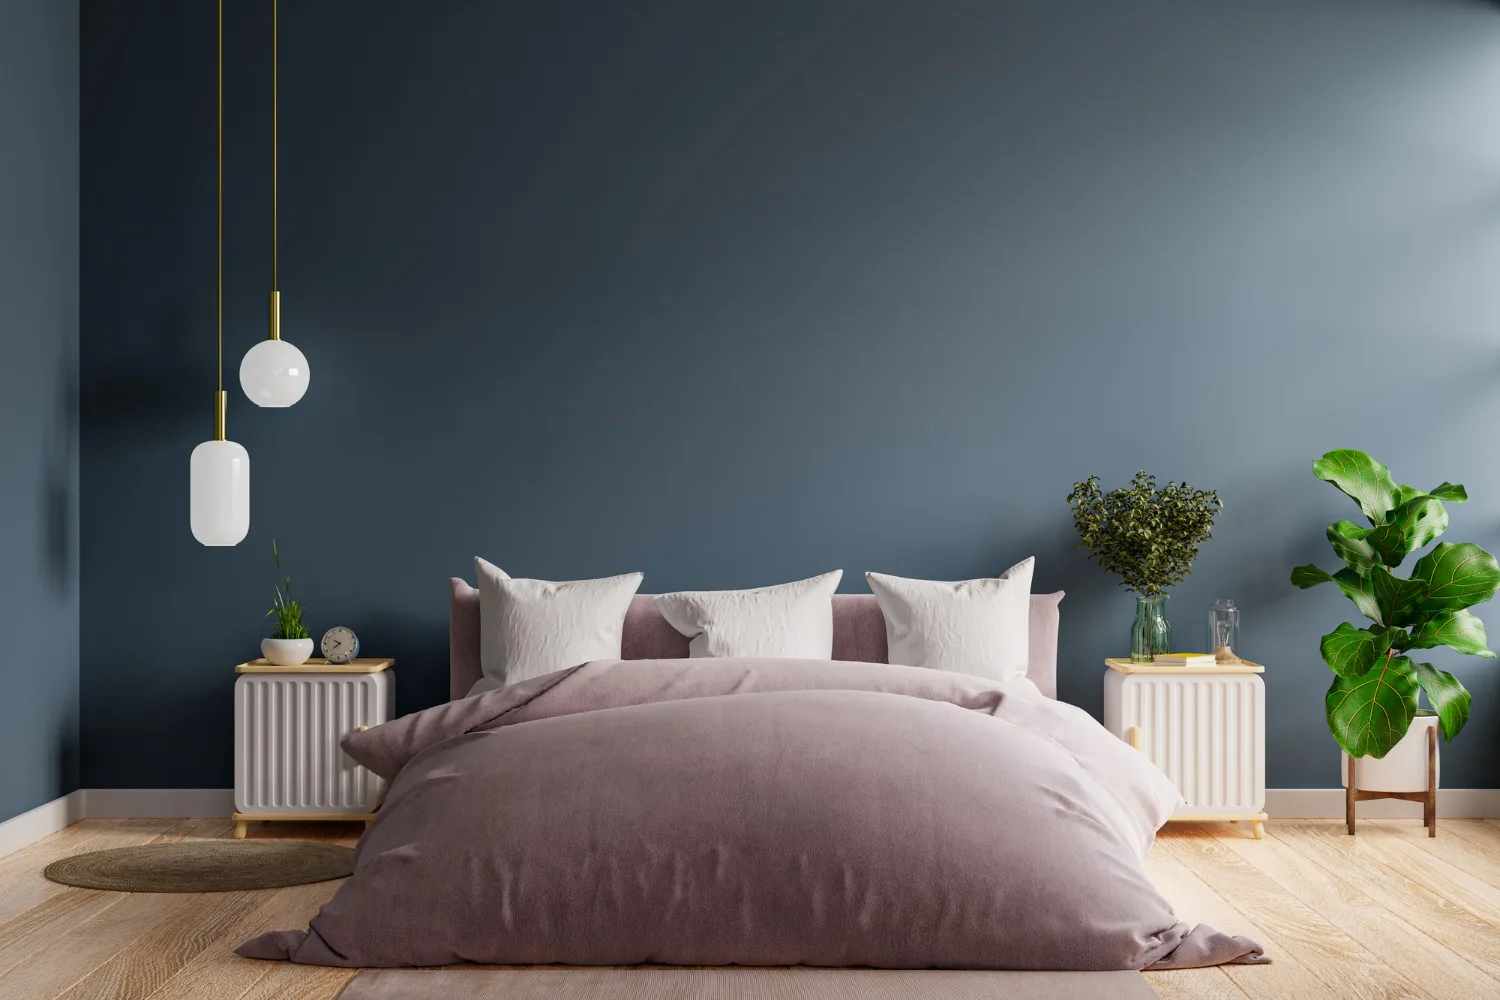 bedroom interior dark style dark blue wall mockup 3d rendering jpg